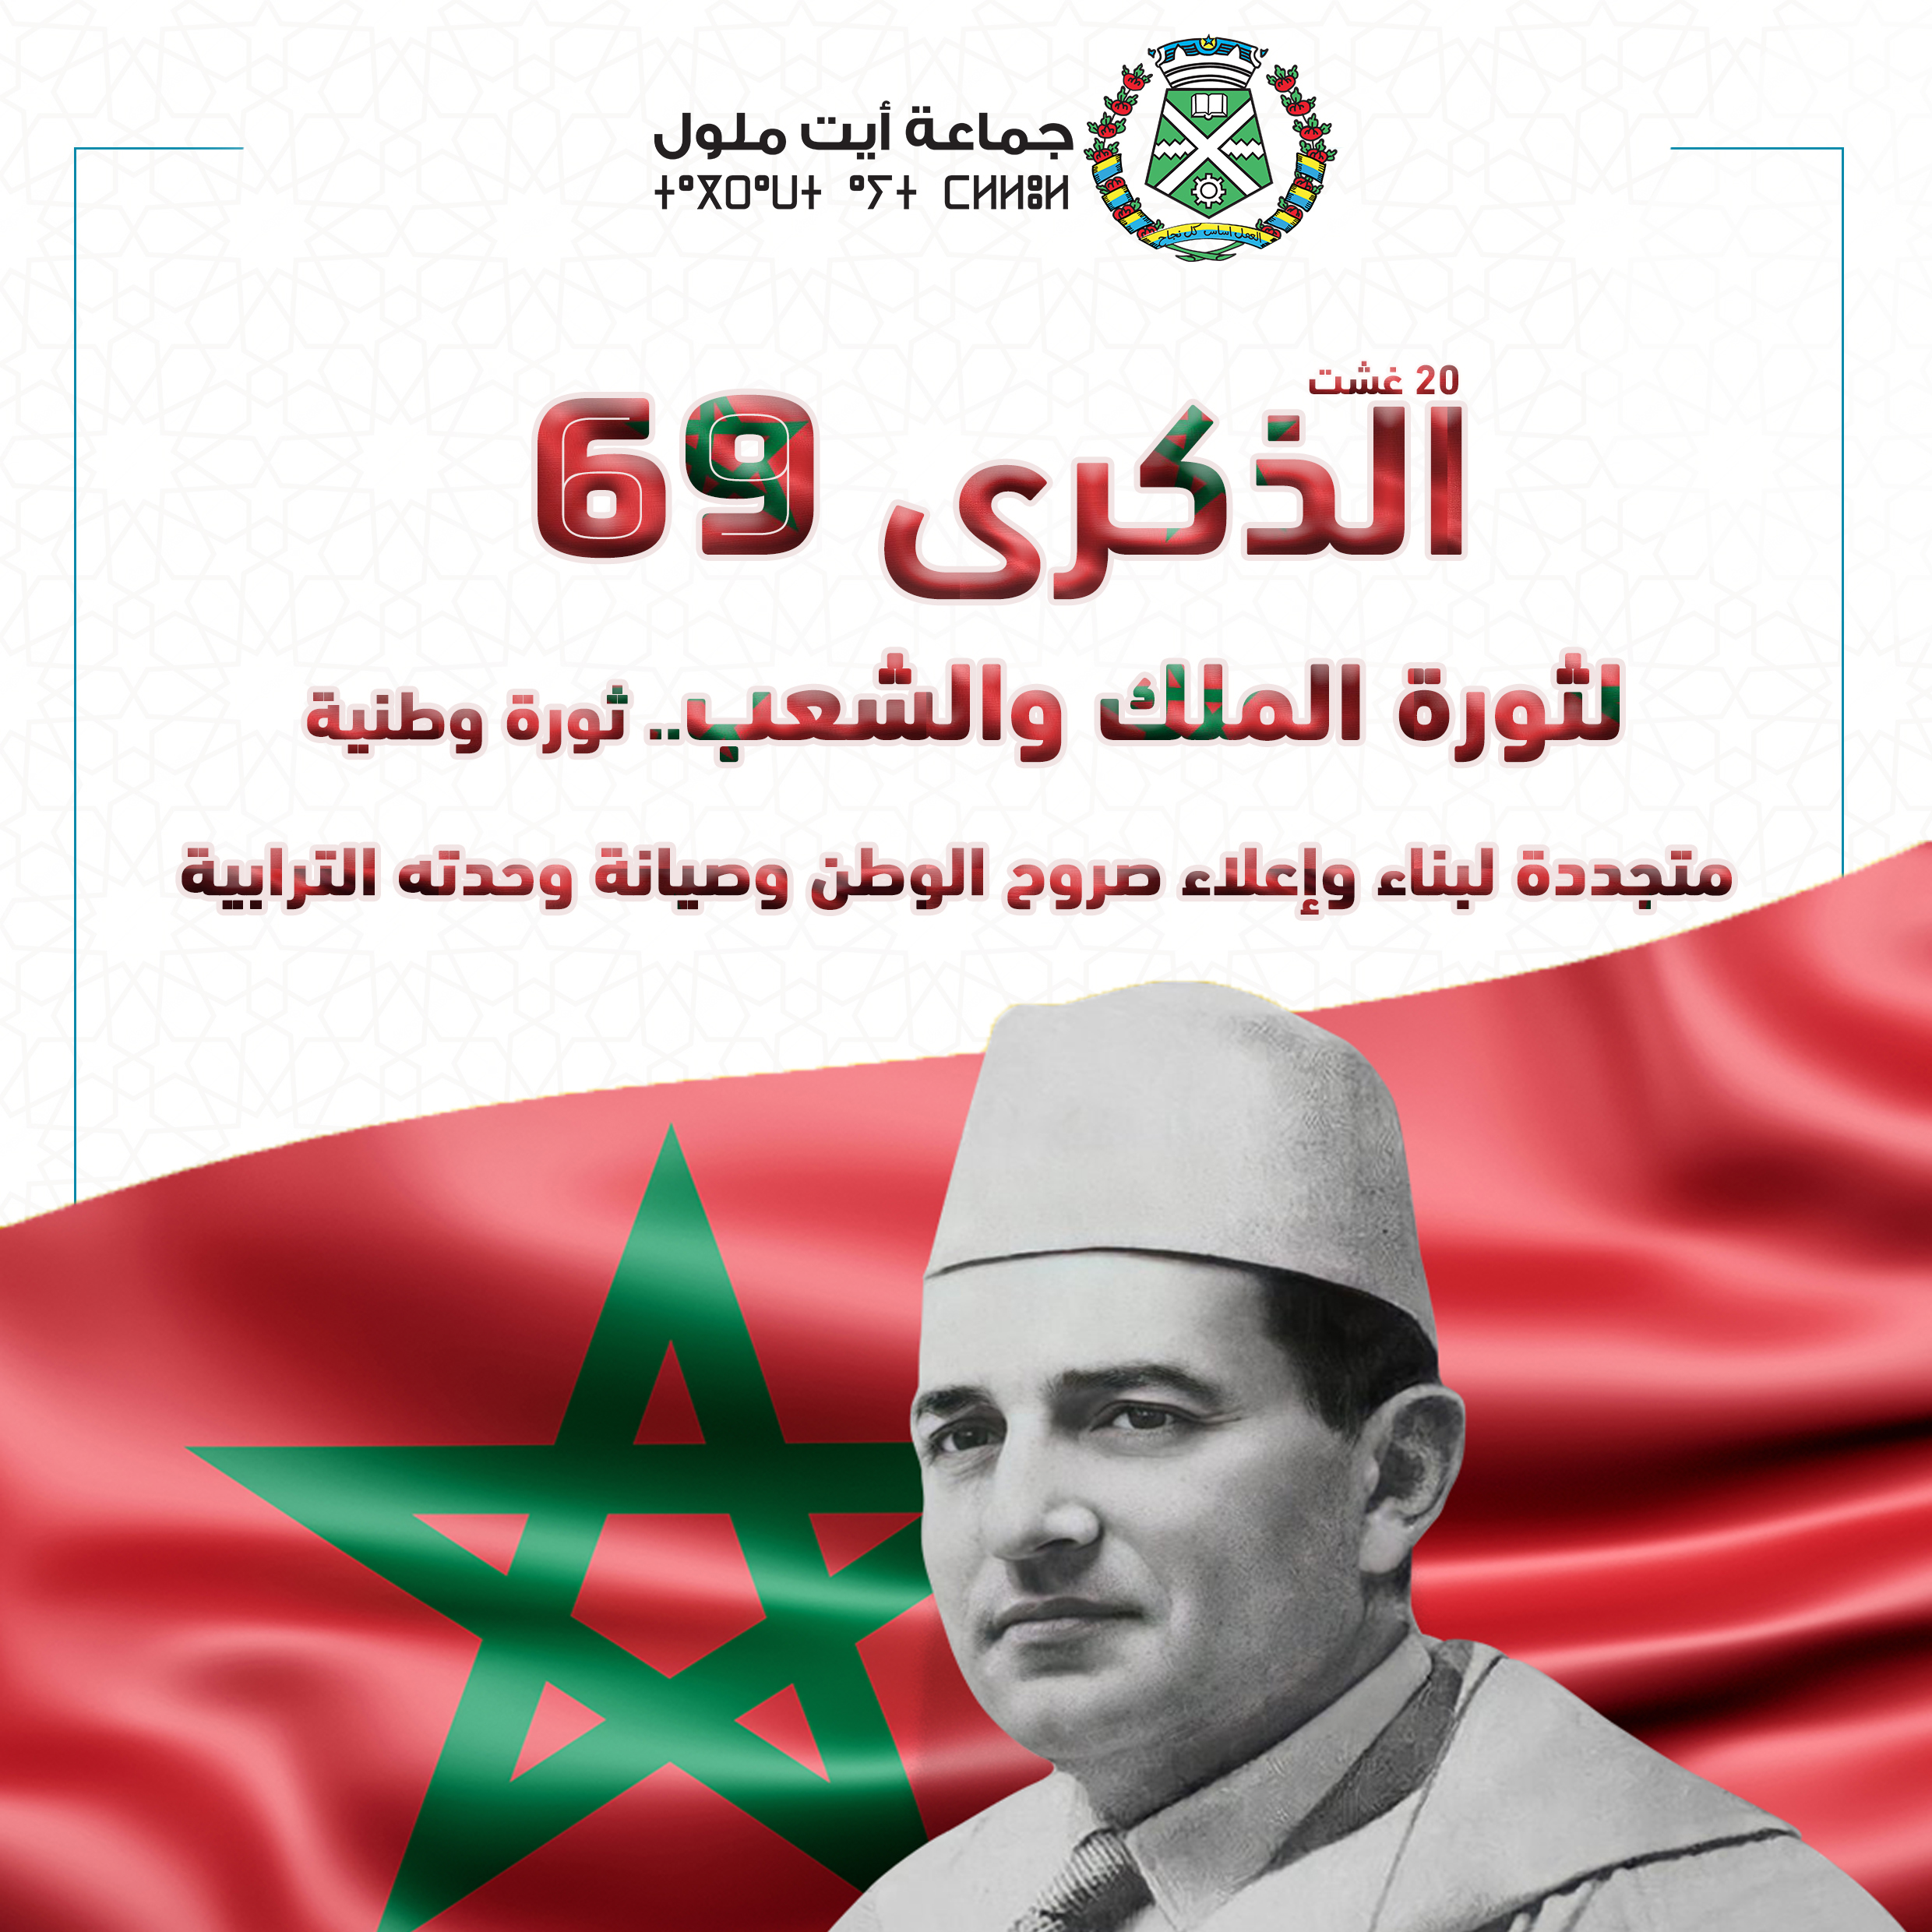 الشعب المغربي يحتفل بالذكرى 69 لثورة الملك والشعب